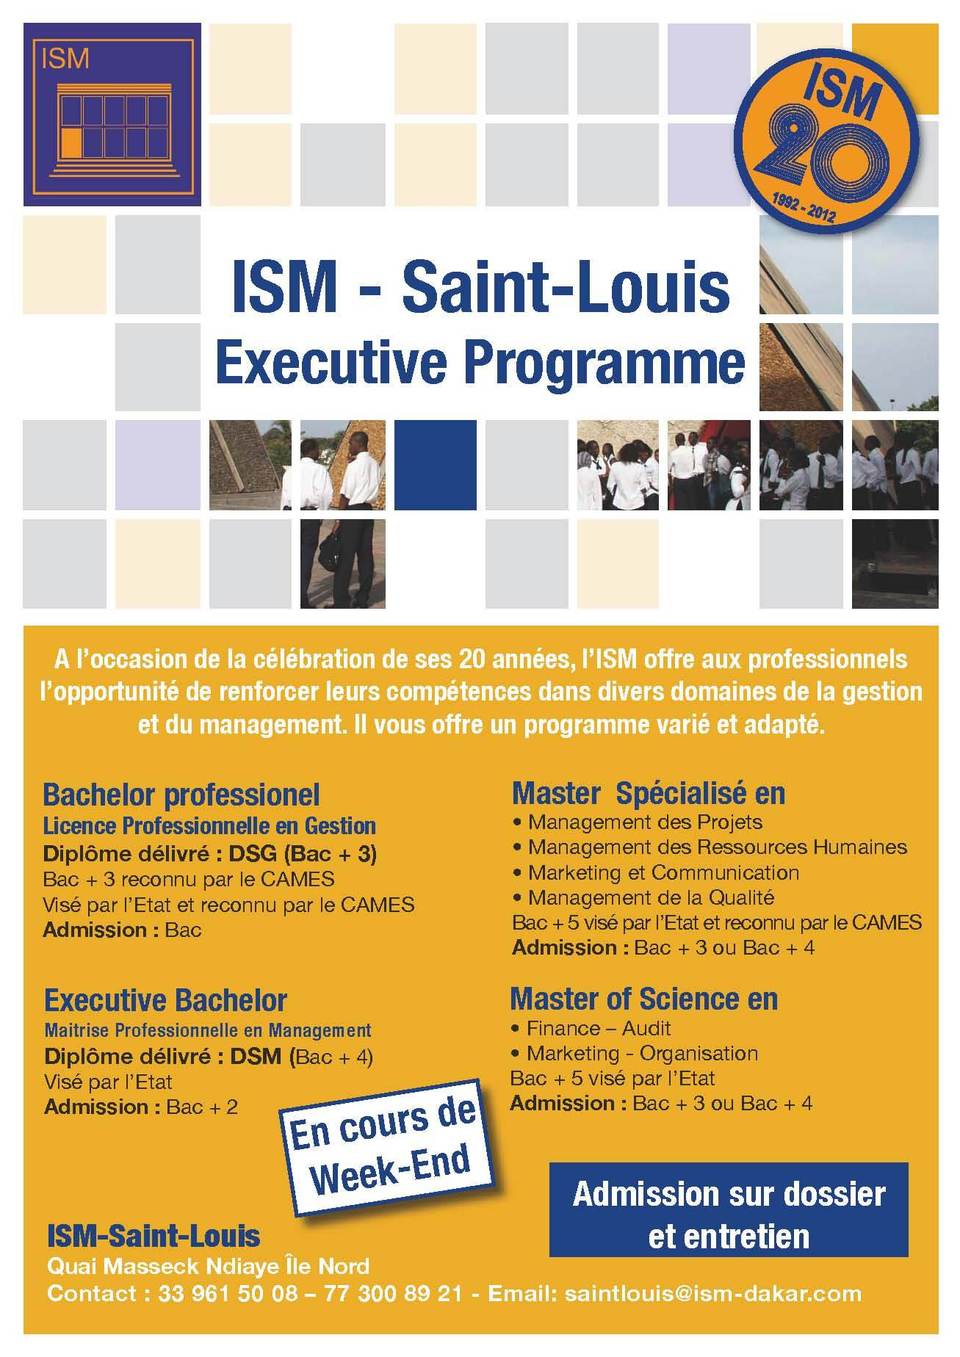 L'Institut Supérieur de Management(ISM) offre aux professionnels l’opportunité de renforcer leurs compétences dans divers domaines de la Gestion et du Management.